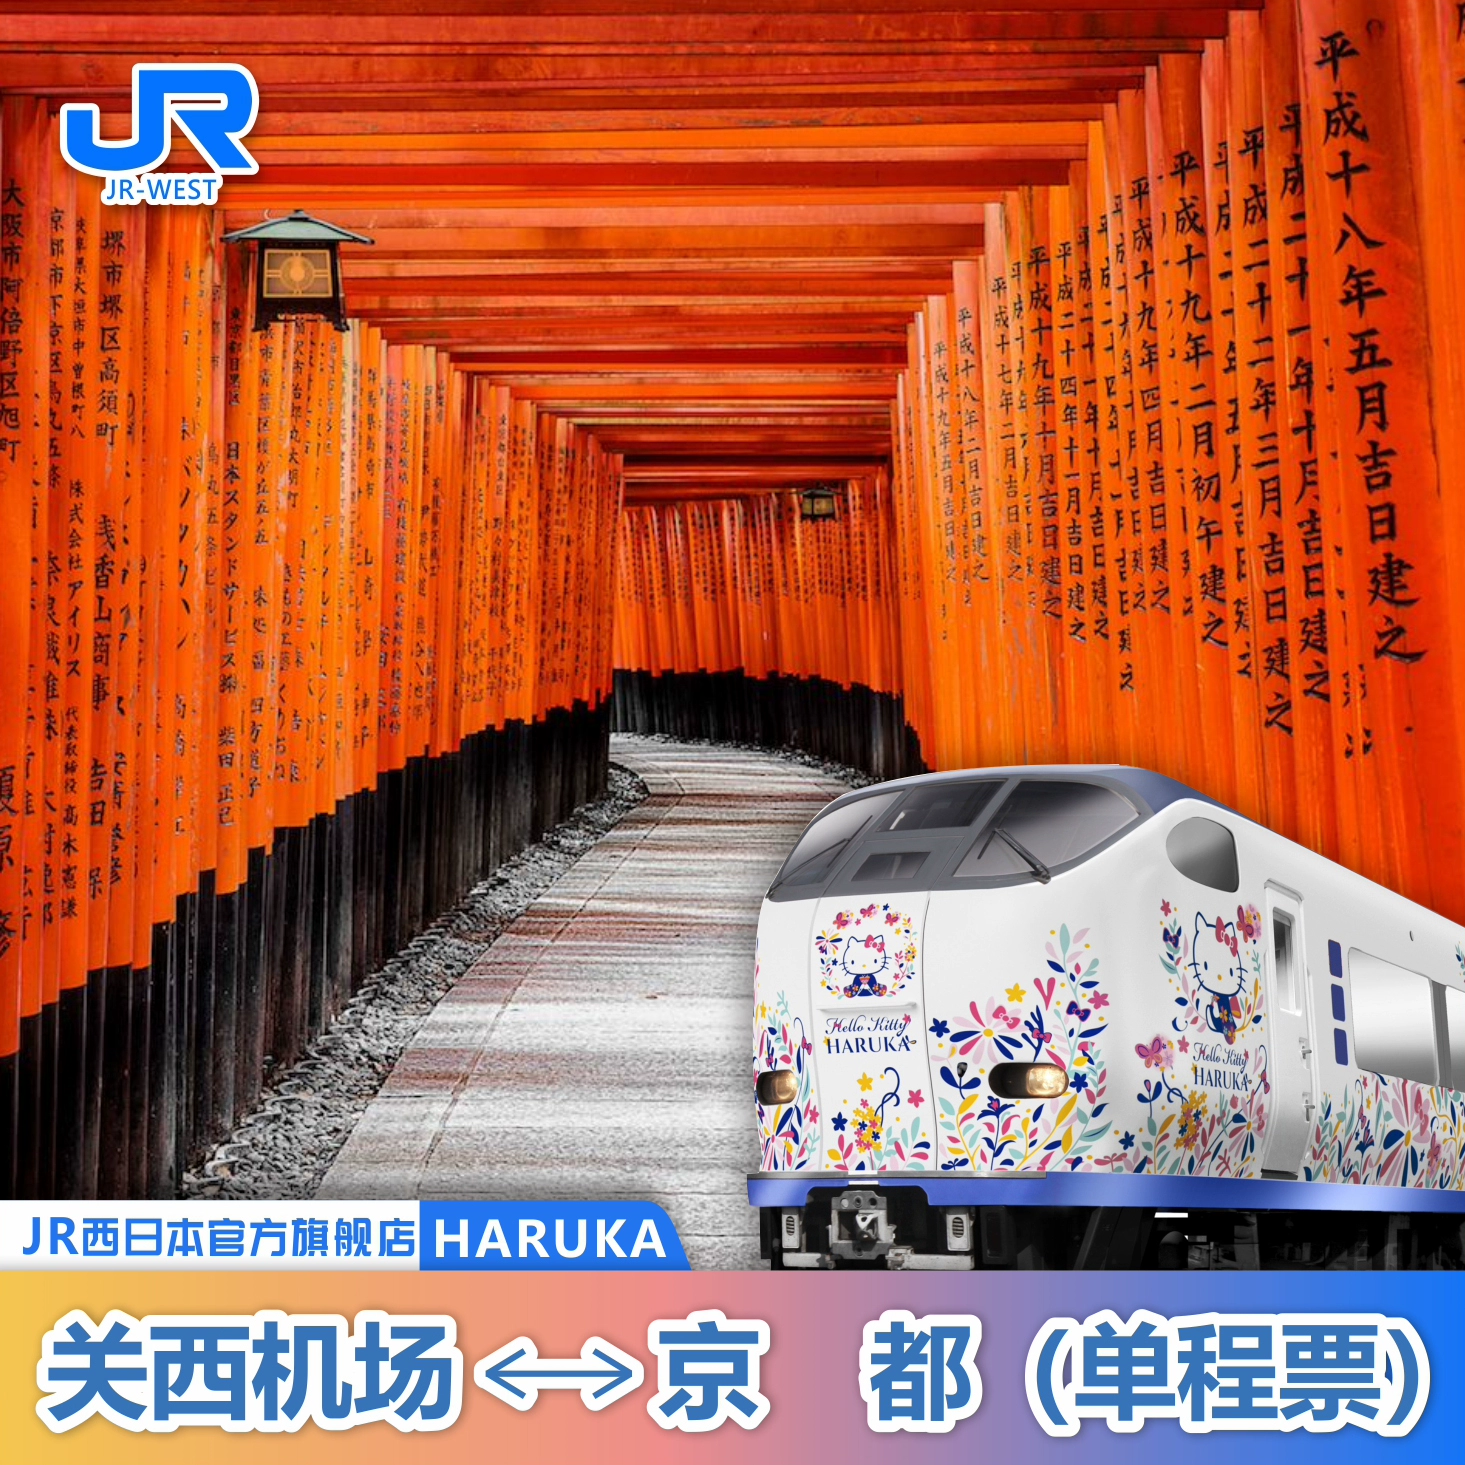 官方旗舰店jrpass haruka日本大阪关西机场京都单程票主图